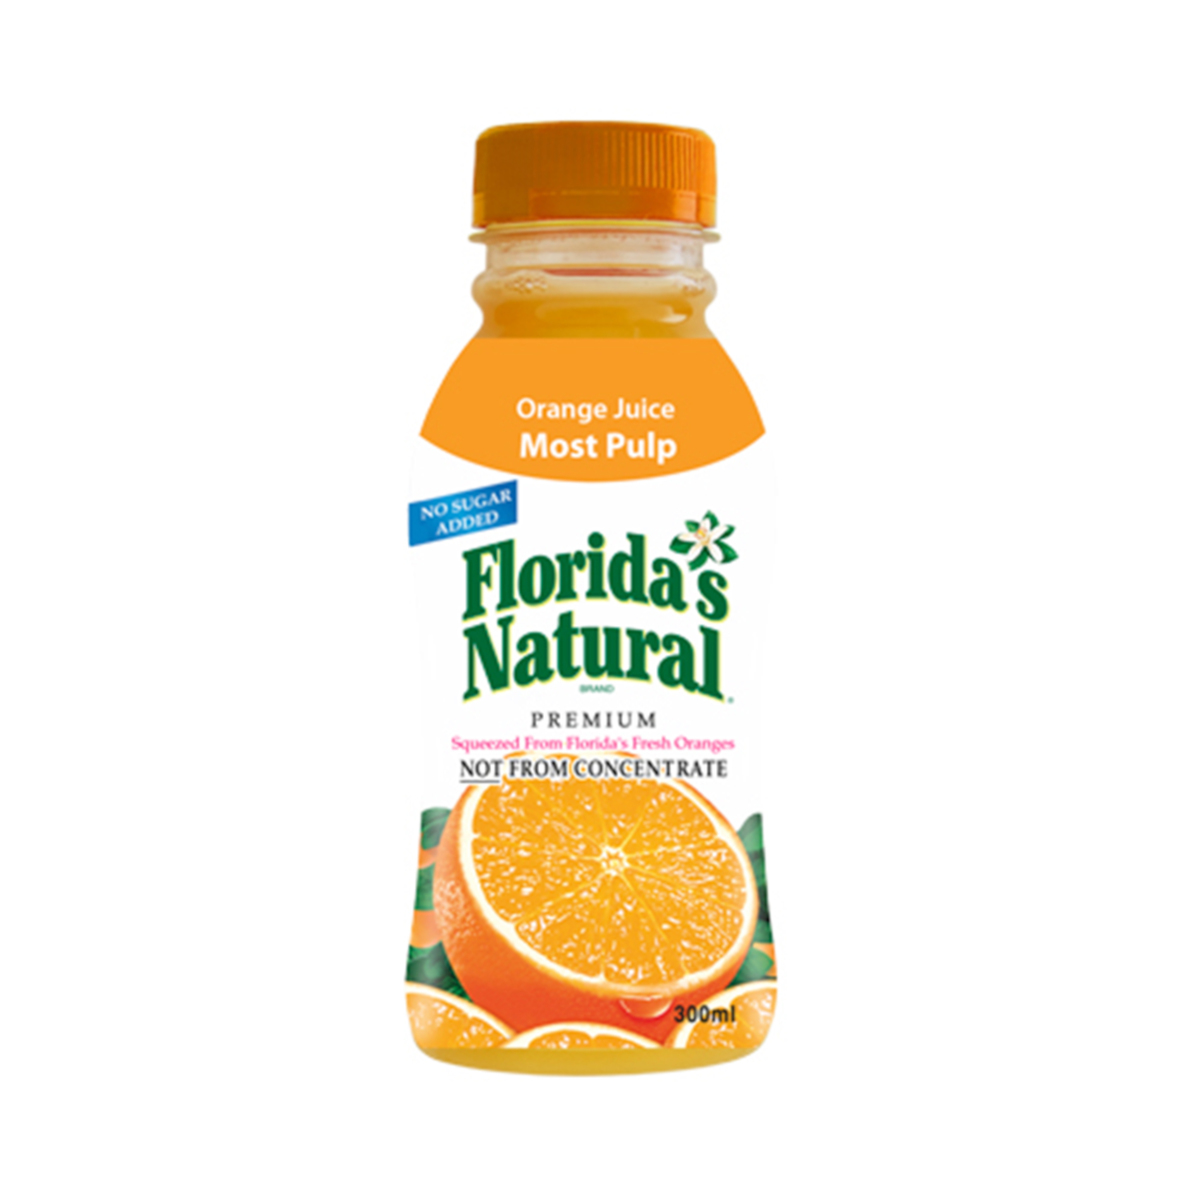 Florida's Natural Premium Orange Juice Most Pulp 300 ml